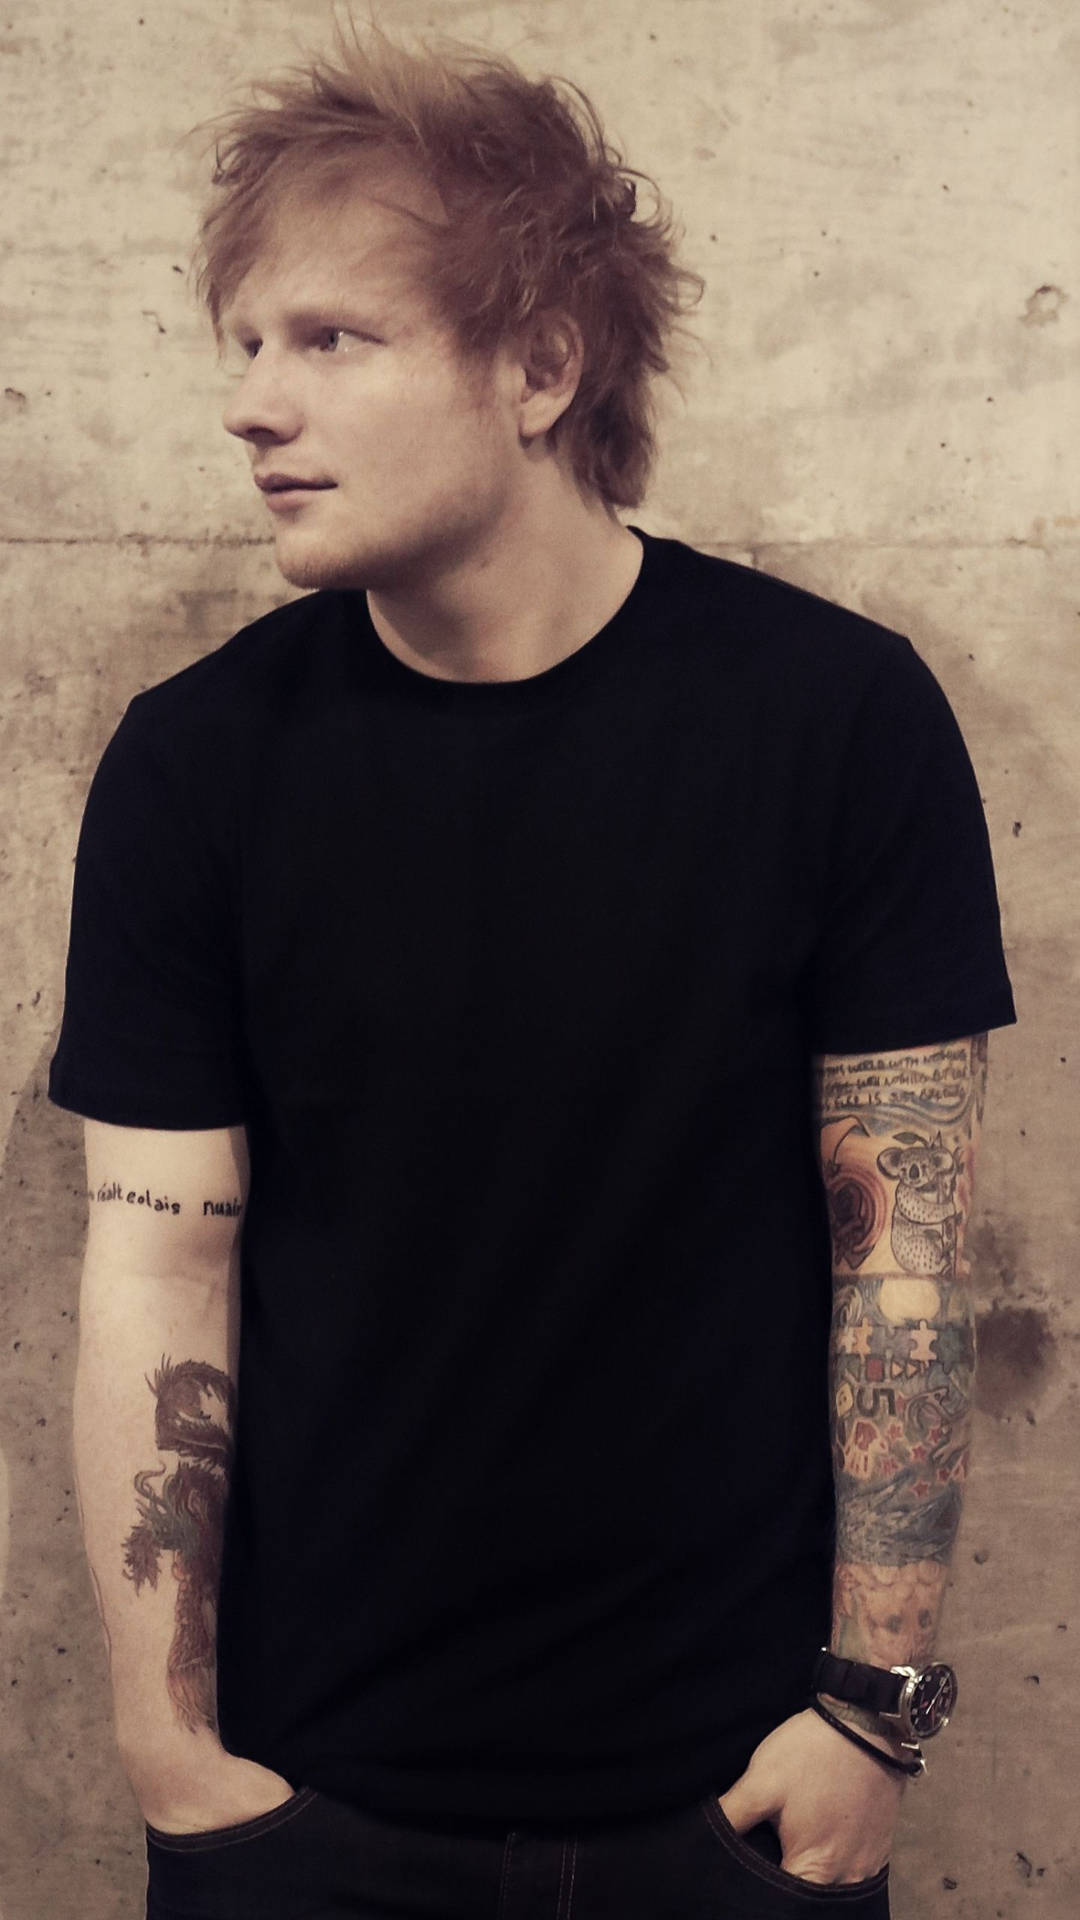 Ed Sheeran looks dashing in a classic white shirt. Wallpaper